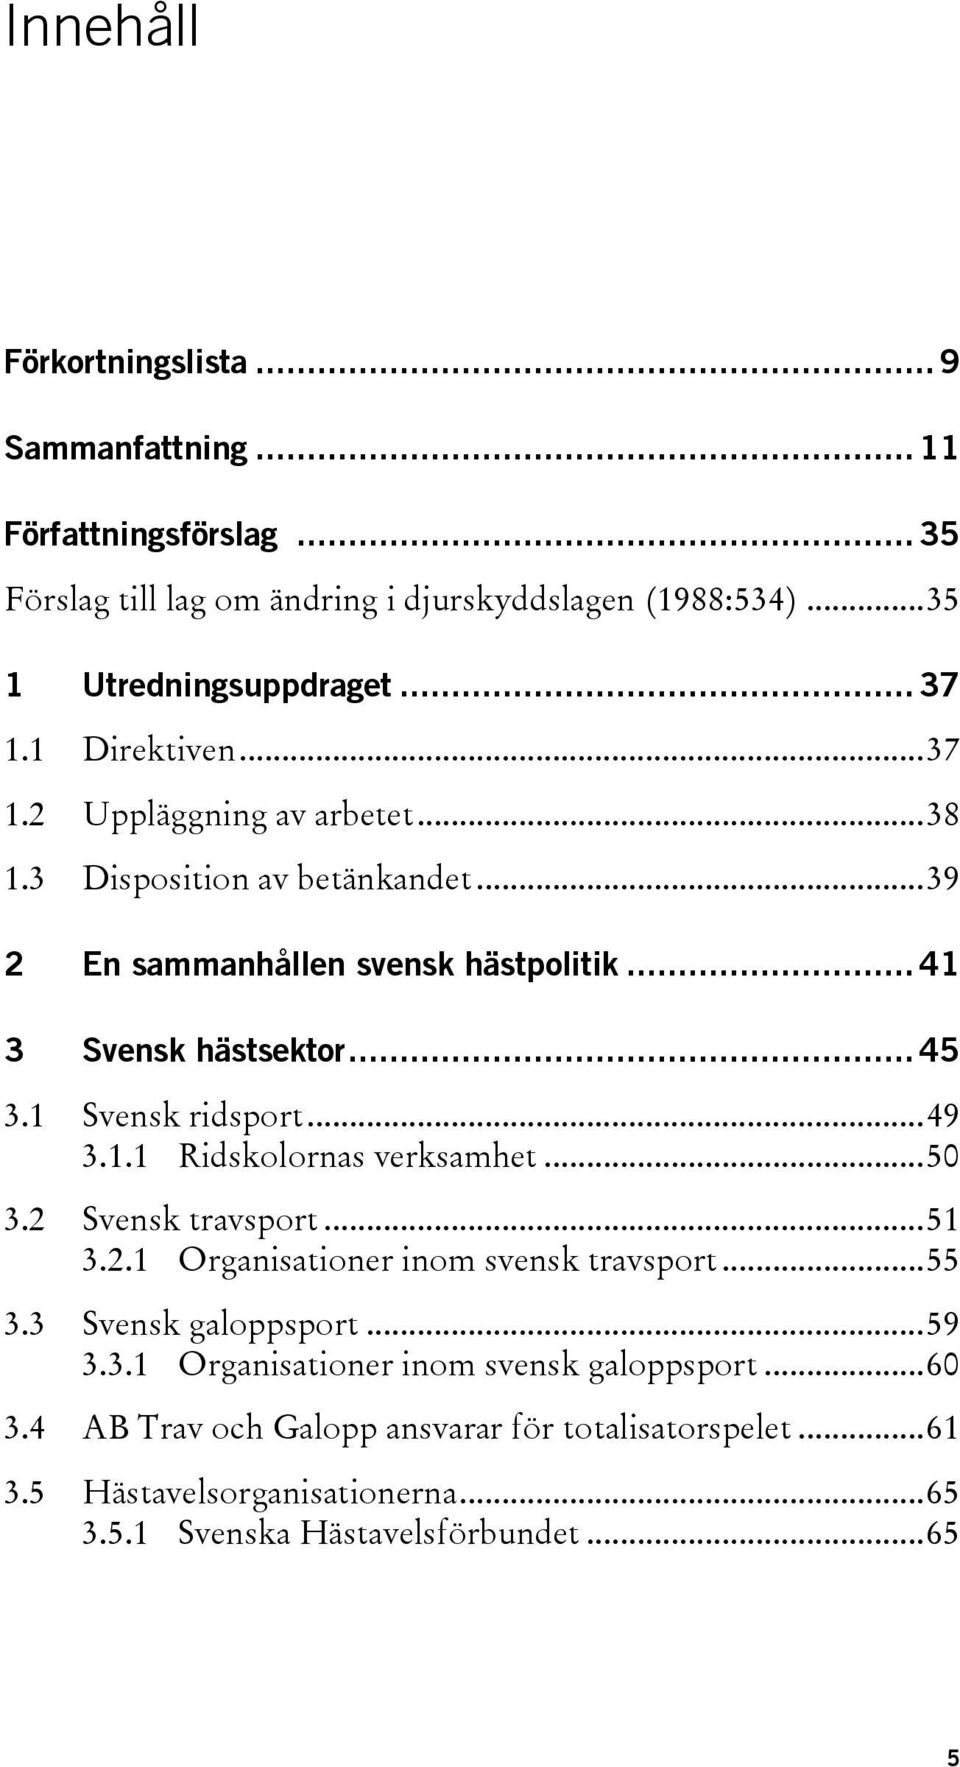 1 Svensk ridsport...49 3.1.1 Ridskolornas verksamhet...50 3.2 Svensk travsport...51 3.2.1 Organisationer inom svensk travsport...55 3.3 Svensk galoppsport...59 3.3.1 Organisationer inom svensk galoppsport.